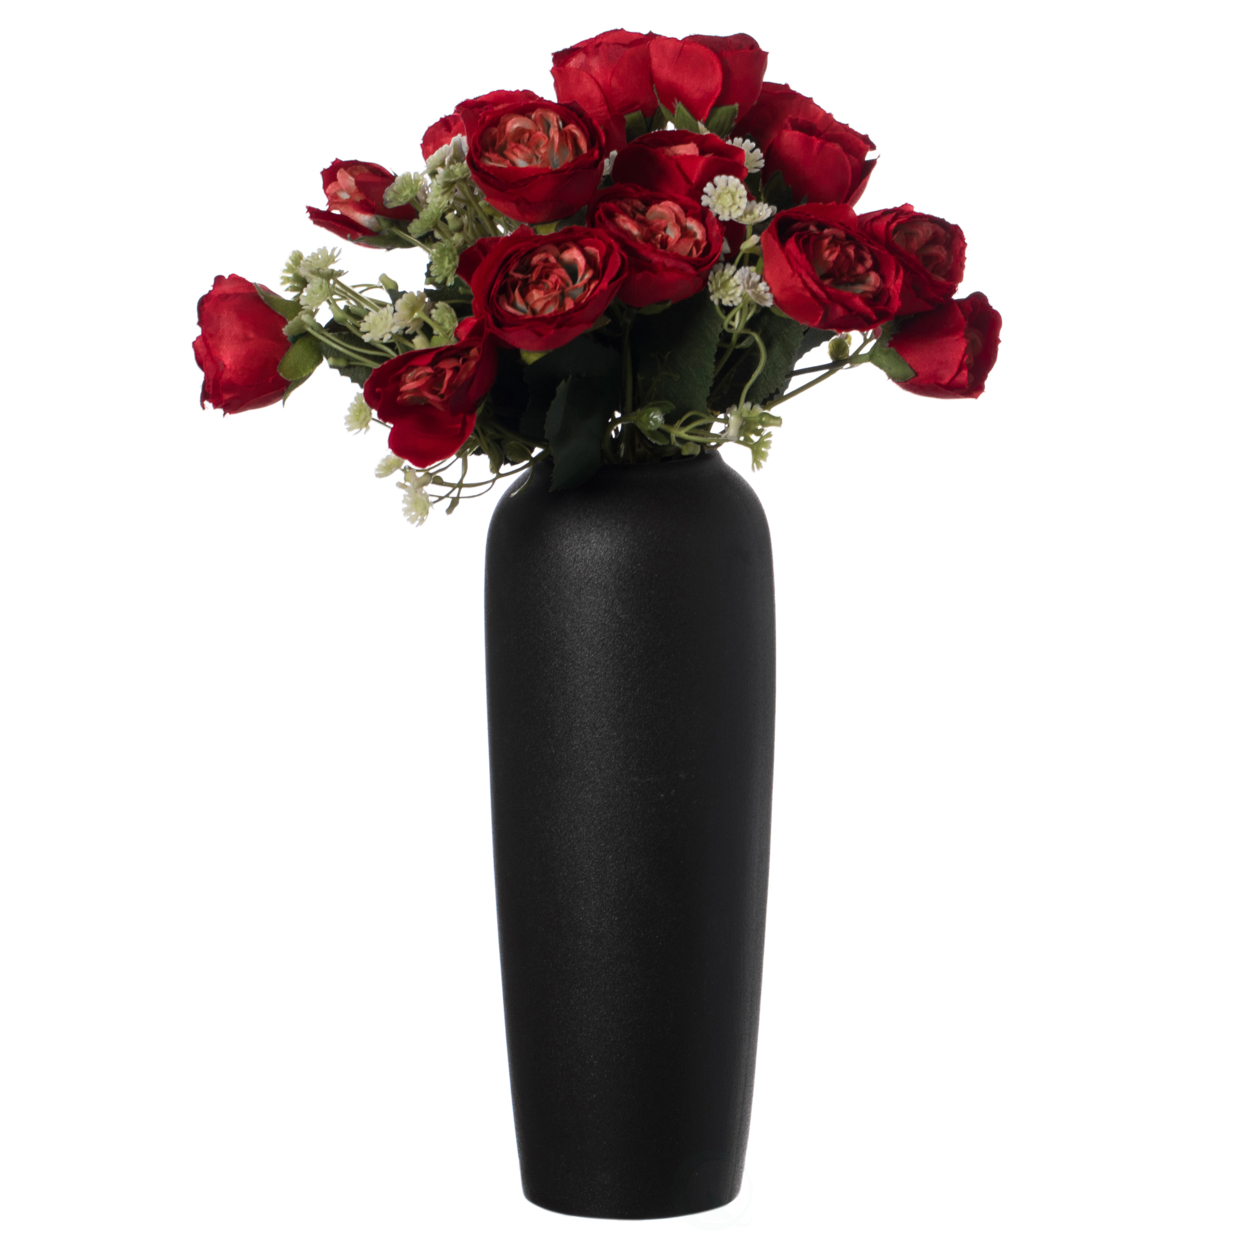 Contemporary Black Ceramic Cylinder Shaped Table Flower Vase Holder - Large